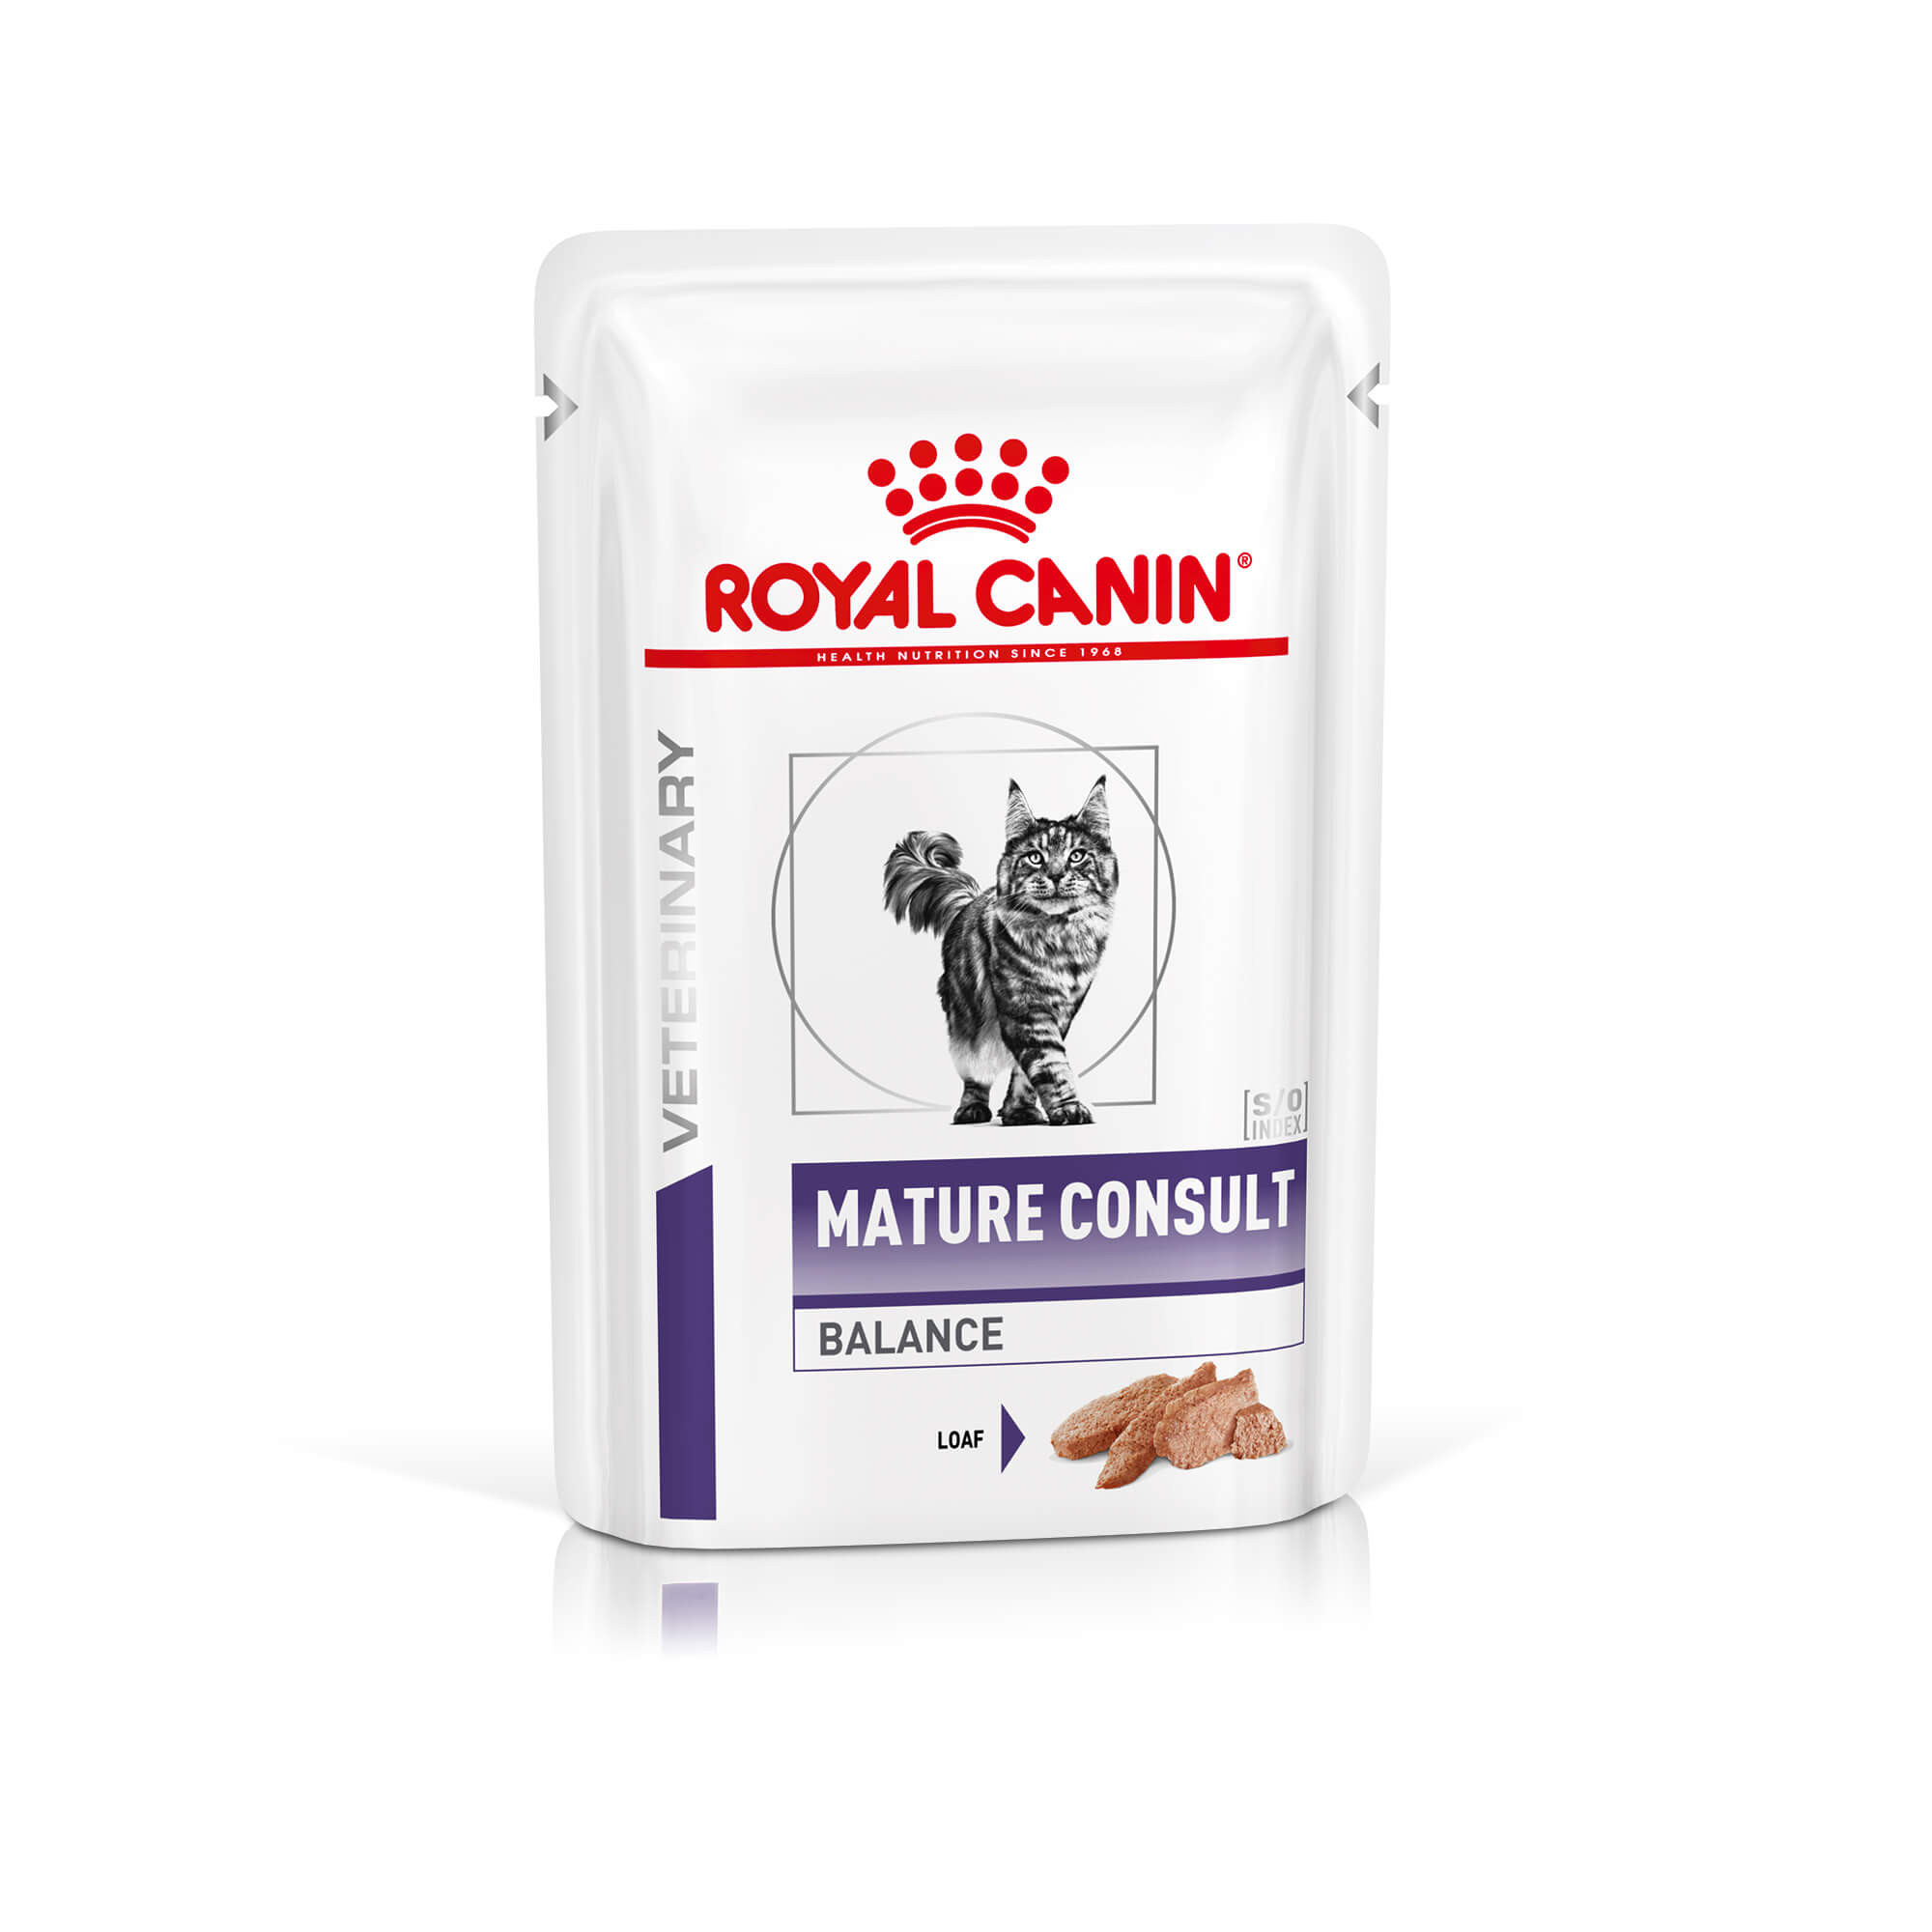 Royal Canin Expert Mature Consult Balance vådfoder til katte